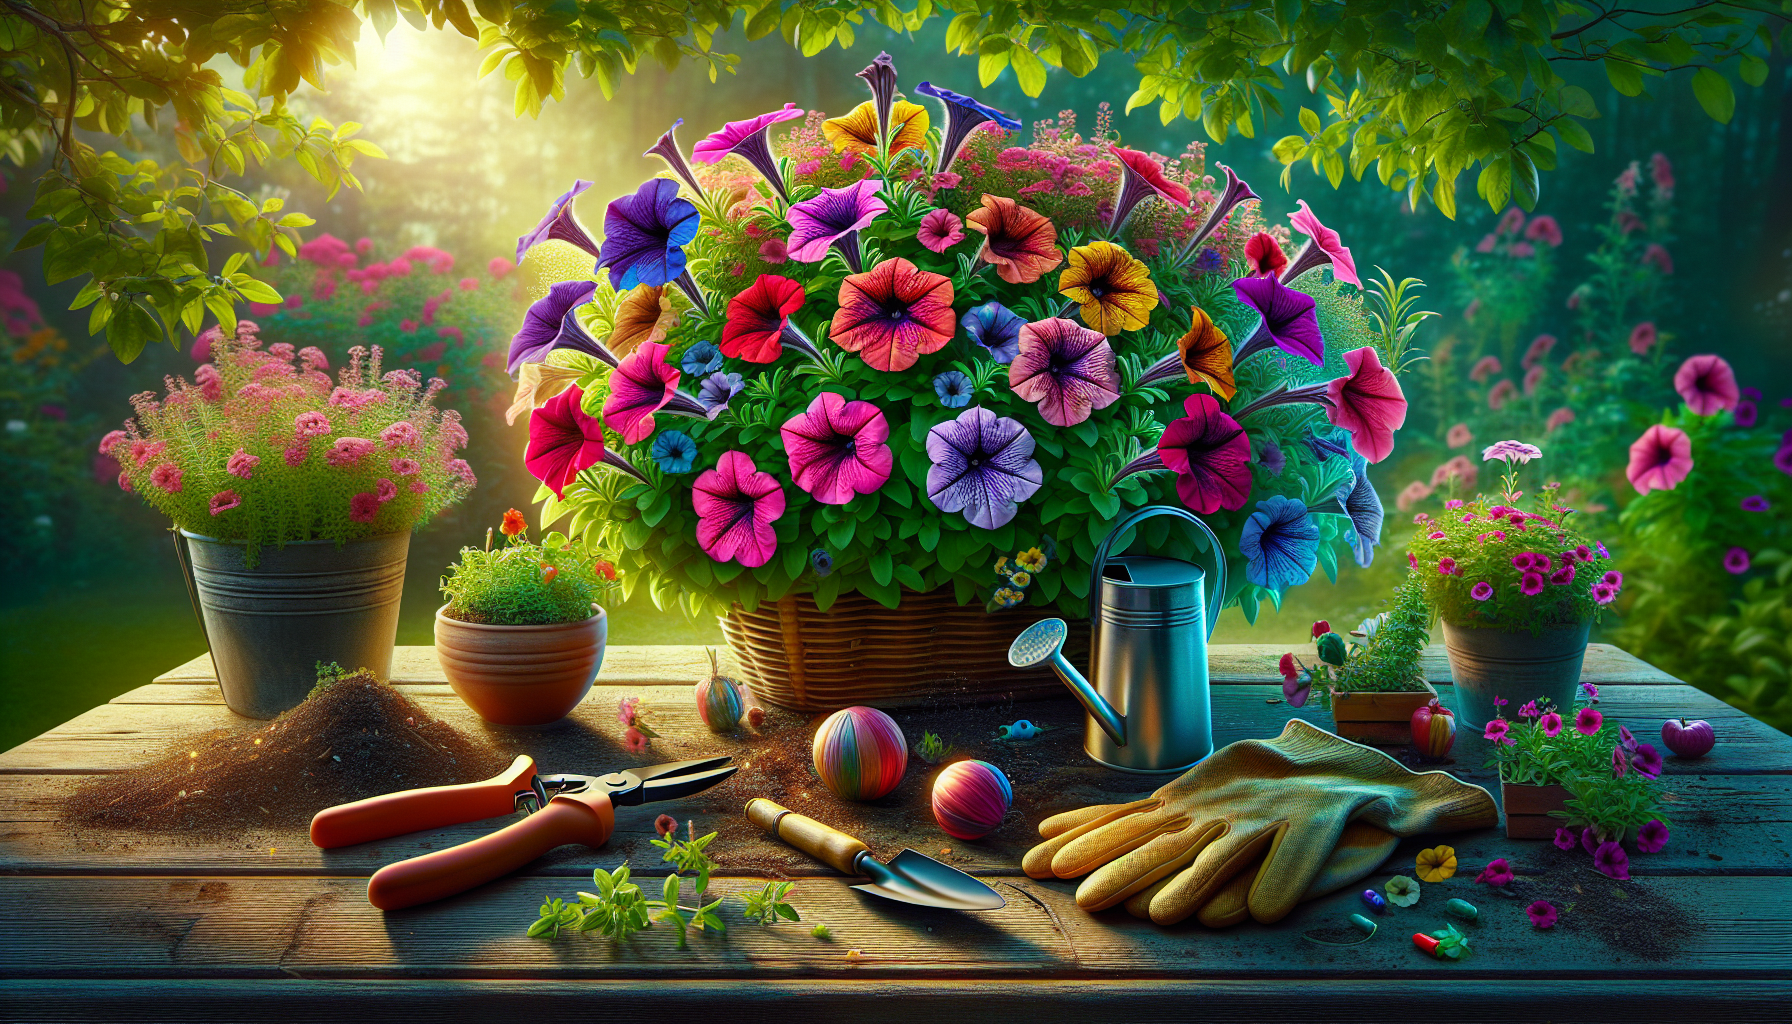 découvrez comment obtenir des fleurs éblouissantes toute l'année avec nos conseils pour cultiver des pétunias. profitez d'une explosion de couleurs dans votre jardin grâce à nos astuces de jardinage.